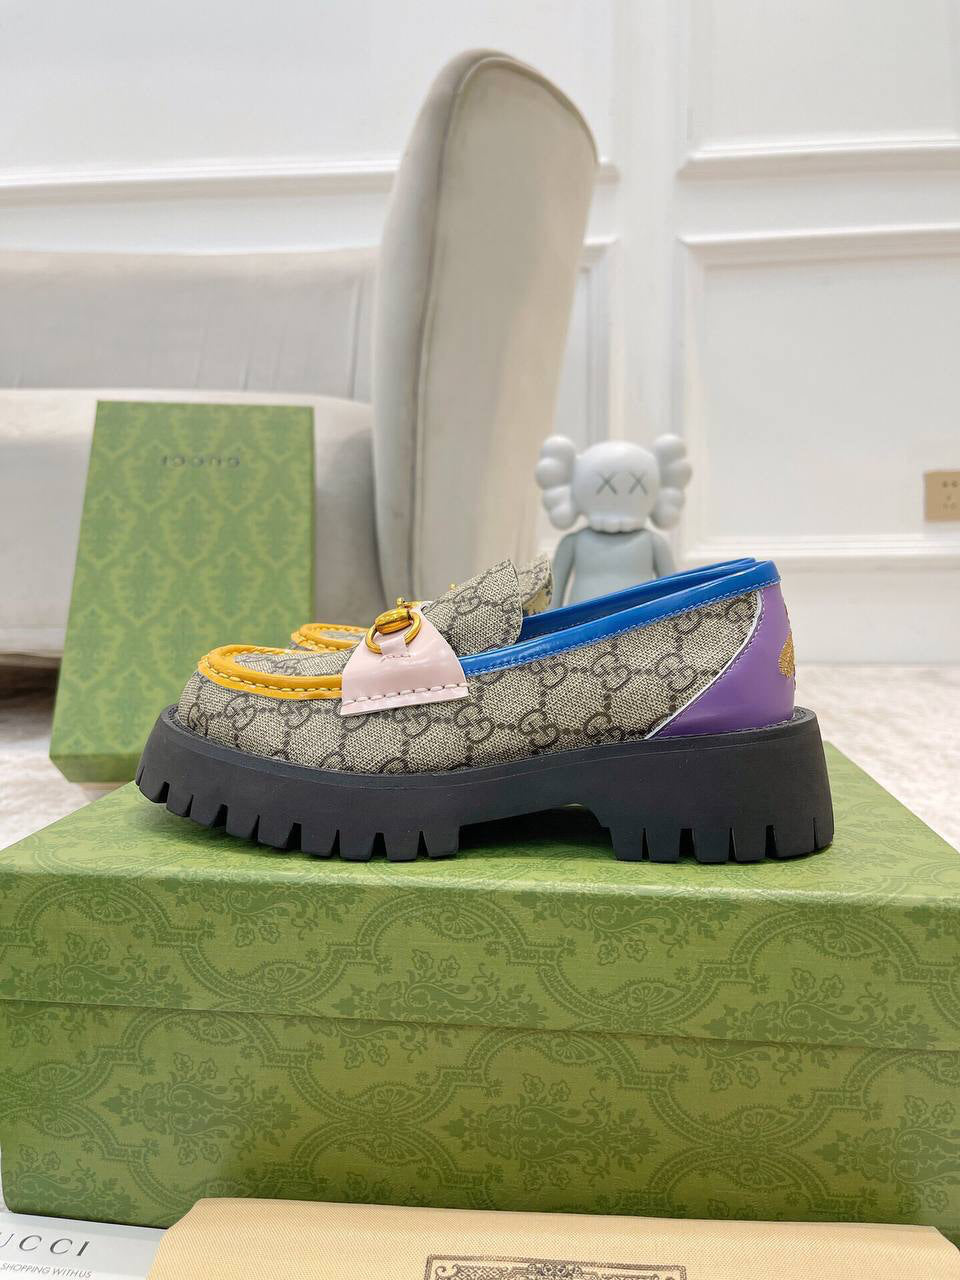 Gucci GG canvas colour-block loafers